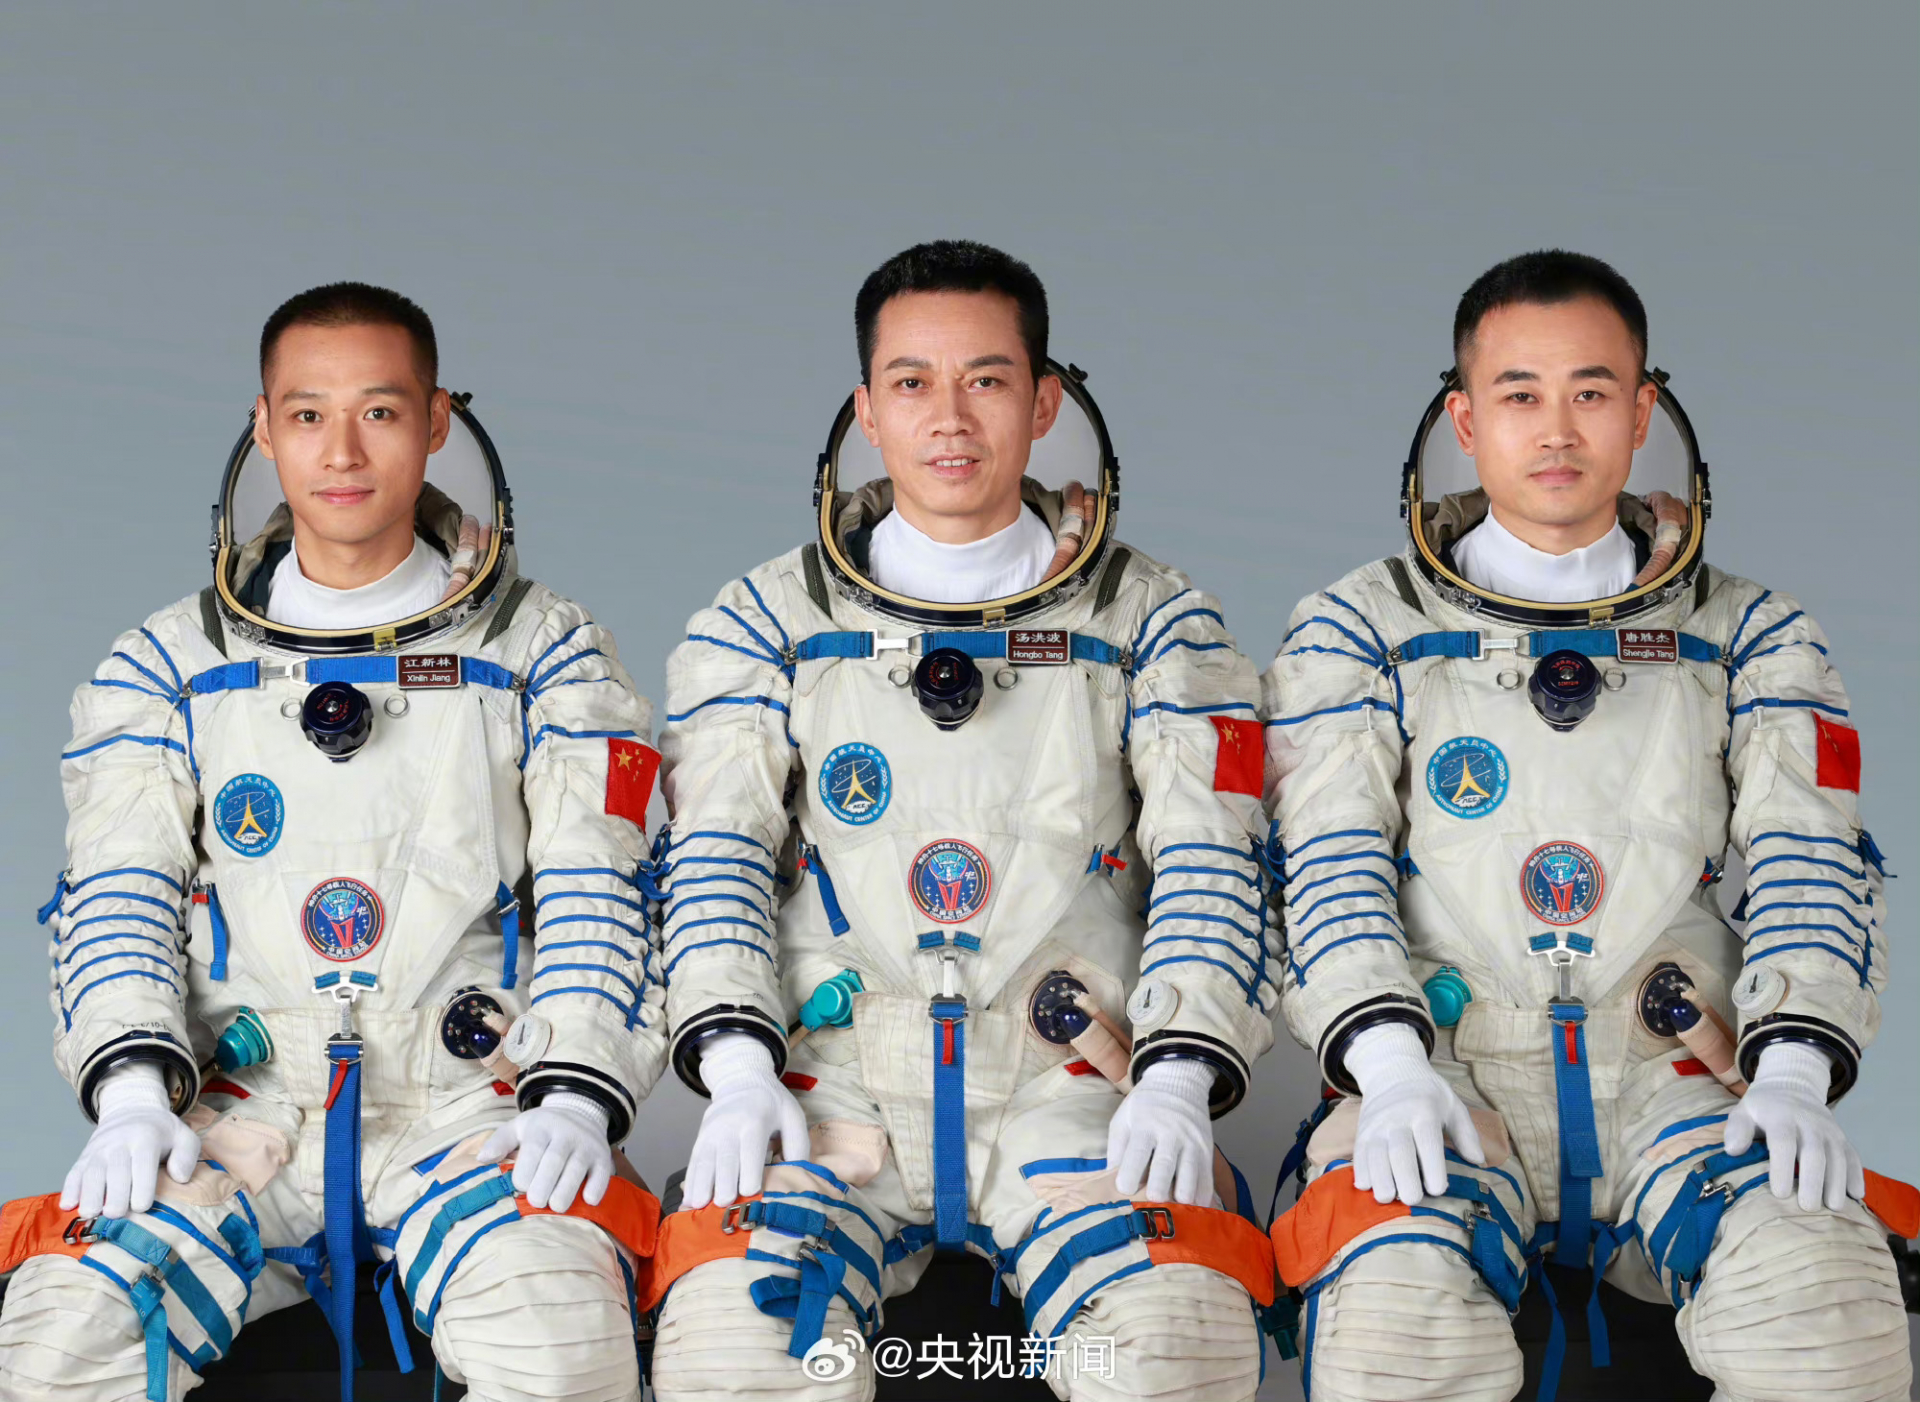 Oficiální foto posádky Šen-čou 17: zleva Jiang Xinlin, veterán Tang Hongbo a Tang Shengjie, všichni původně piloti čínského letectva.